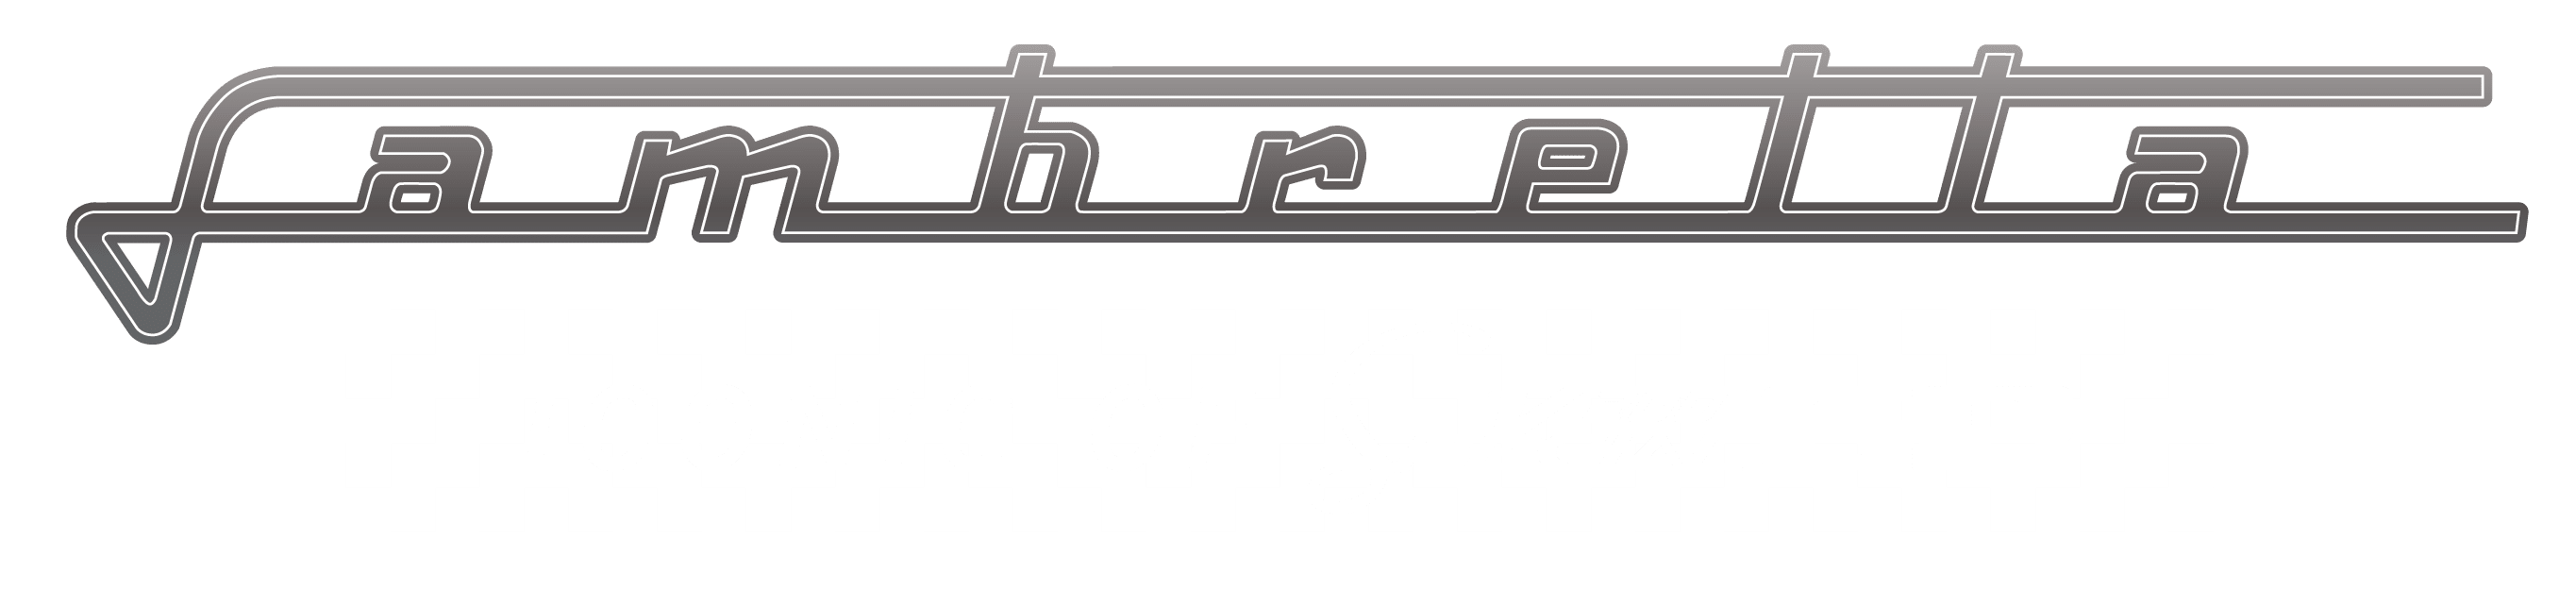 Lambretta V200 GP